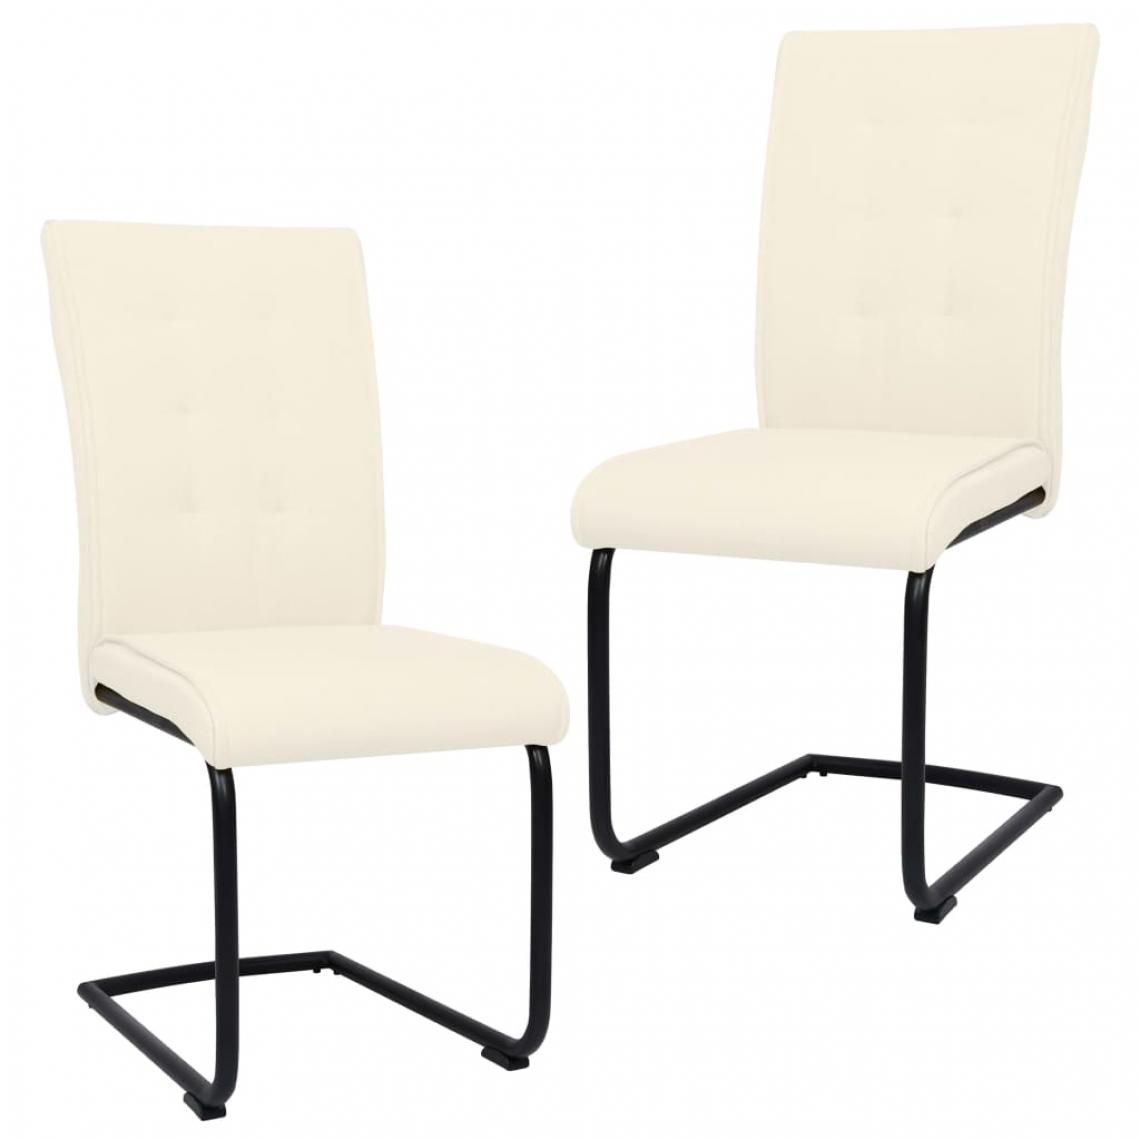 Icaverne - Inedit Fauteuils et chaises serie Stockholm Chaises de salle à manger cantilever 2 pcs Crème Tissu - Chaises